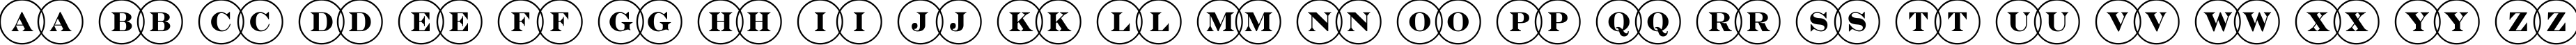 Пример написания английского алфавита шрифтом a_DiscoSerifOvl